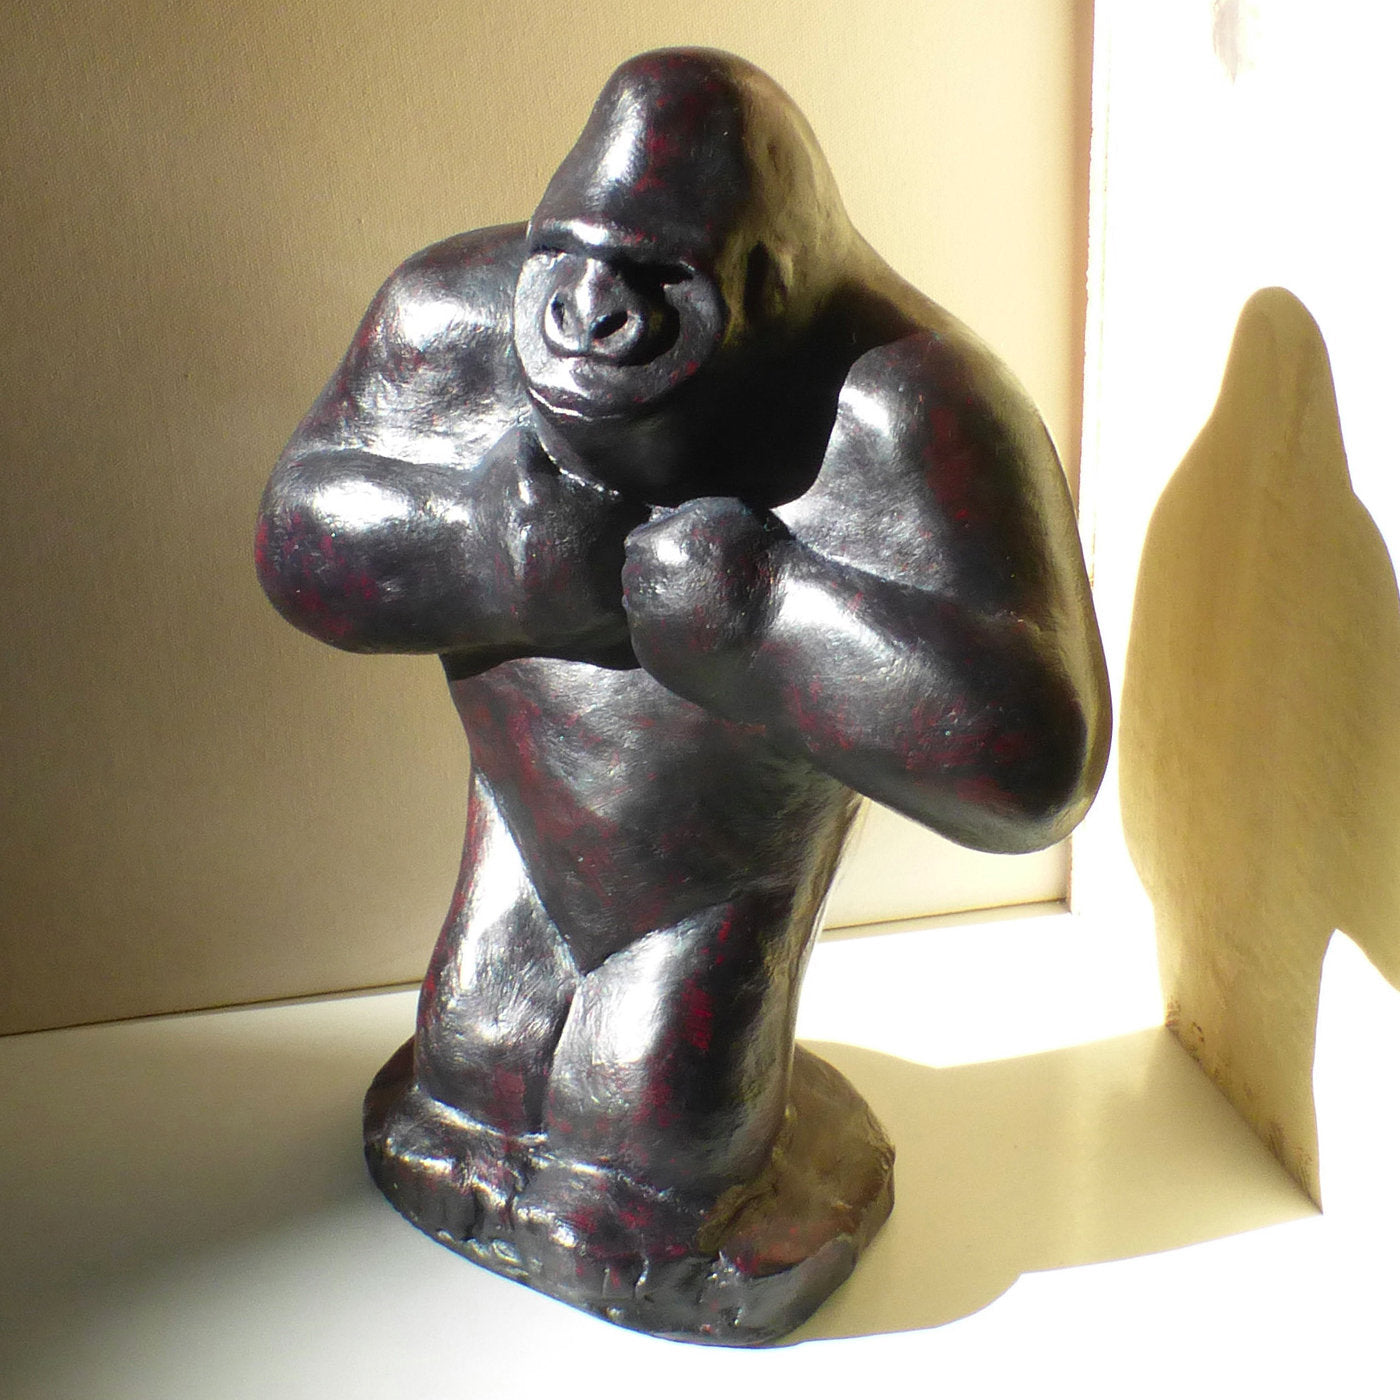 Ebony-Colored Gorilla Sculpture - Alternative view 1